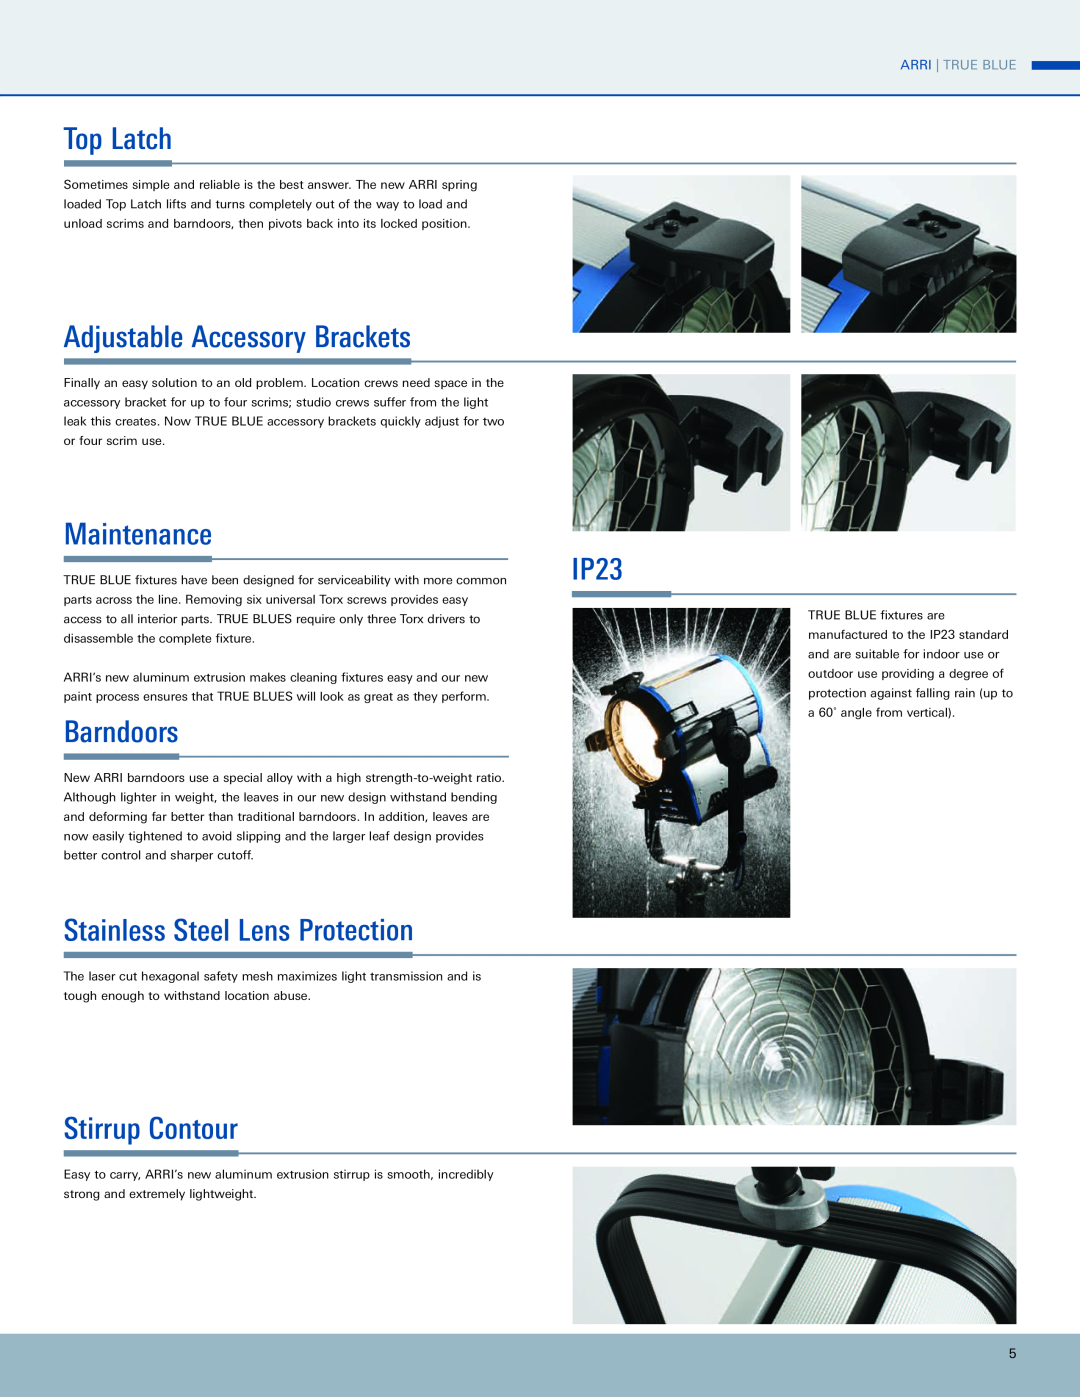 ARRI ARRI TRUE BLUE manual Top Latch, Adjustable Accessory Brackets, Maintenance, Barndoors, IP23, Stirrup Contour 